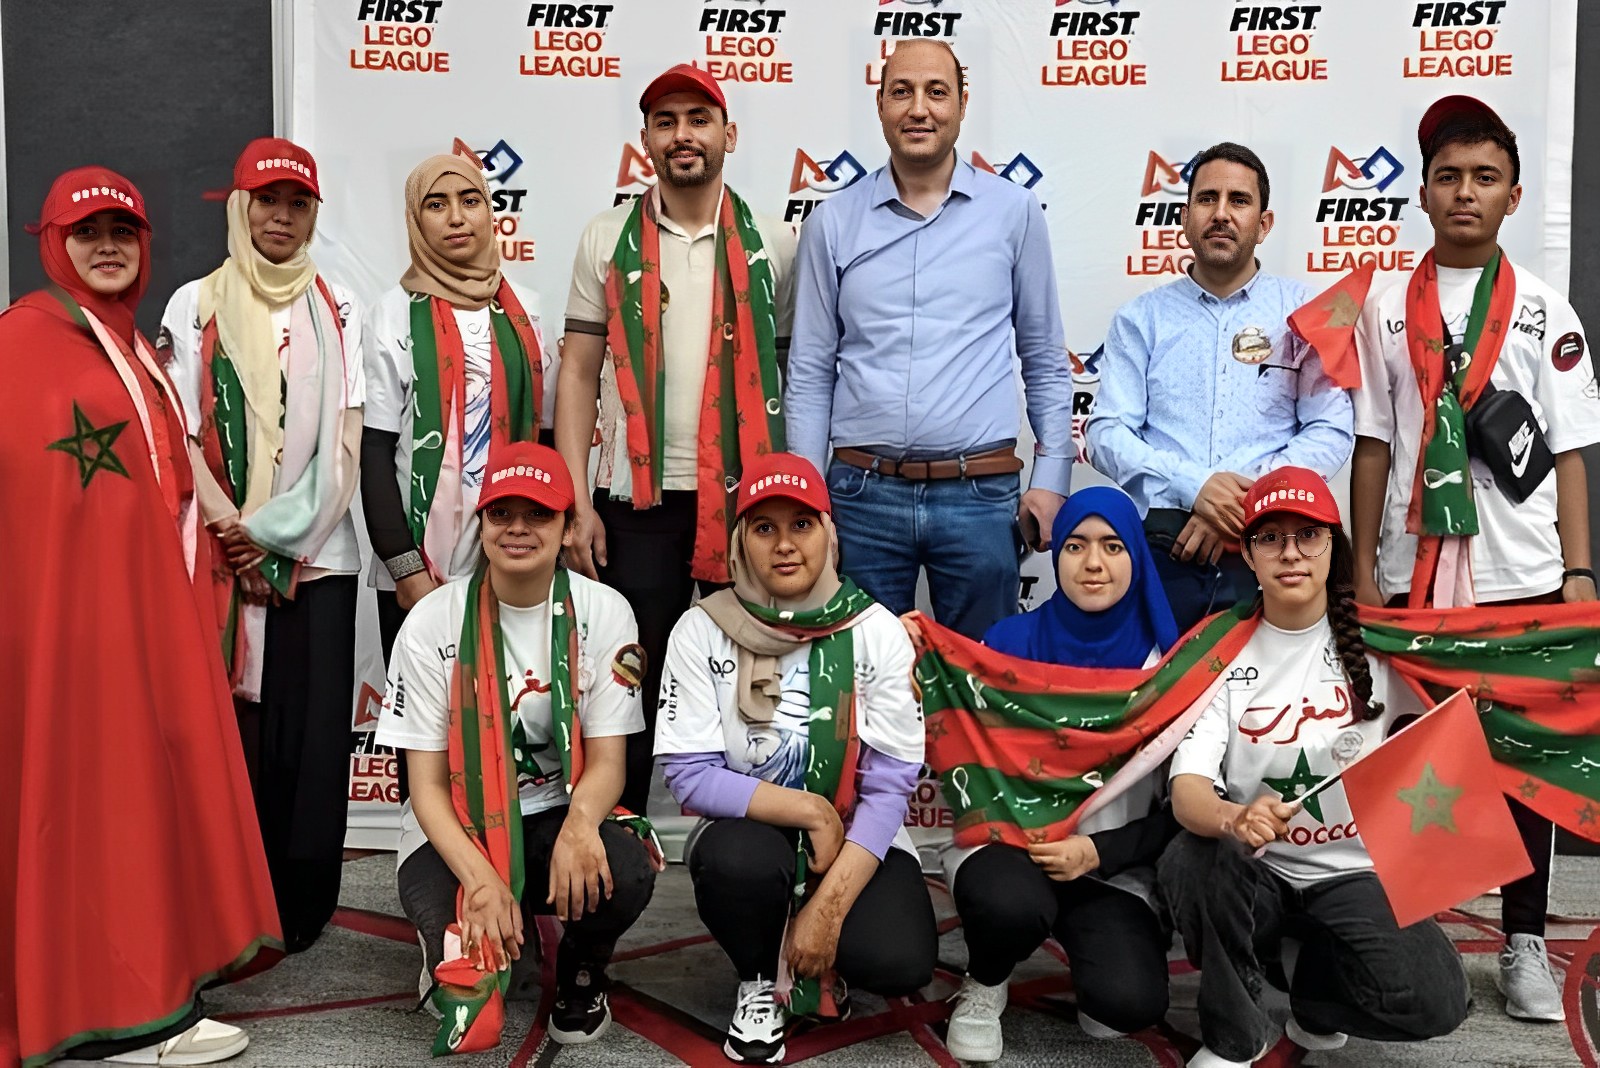 فريق مغربي يفوز بالمركز الثاني في مسابقة عالمية للروبوتيك